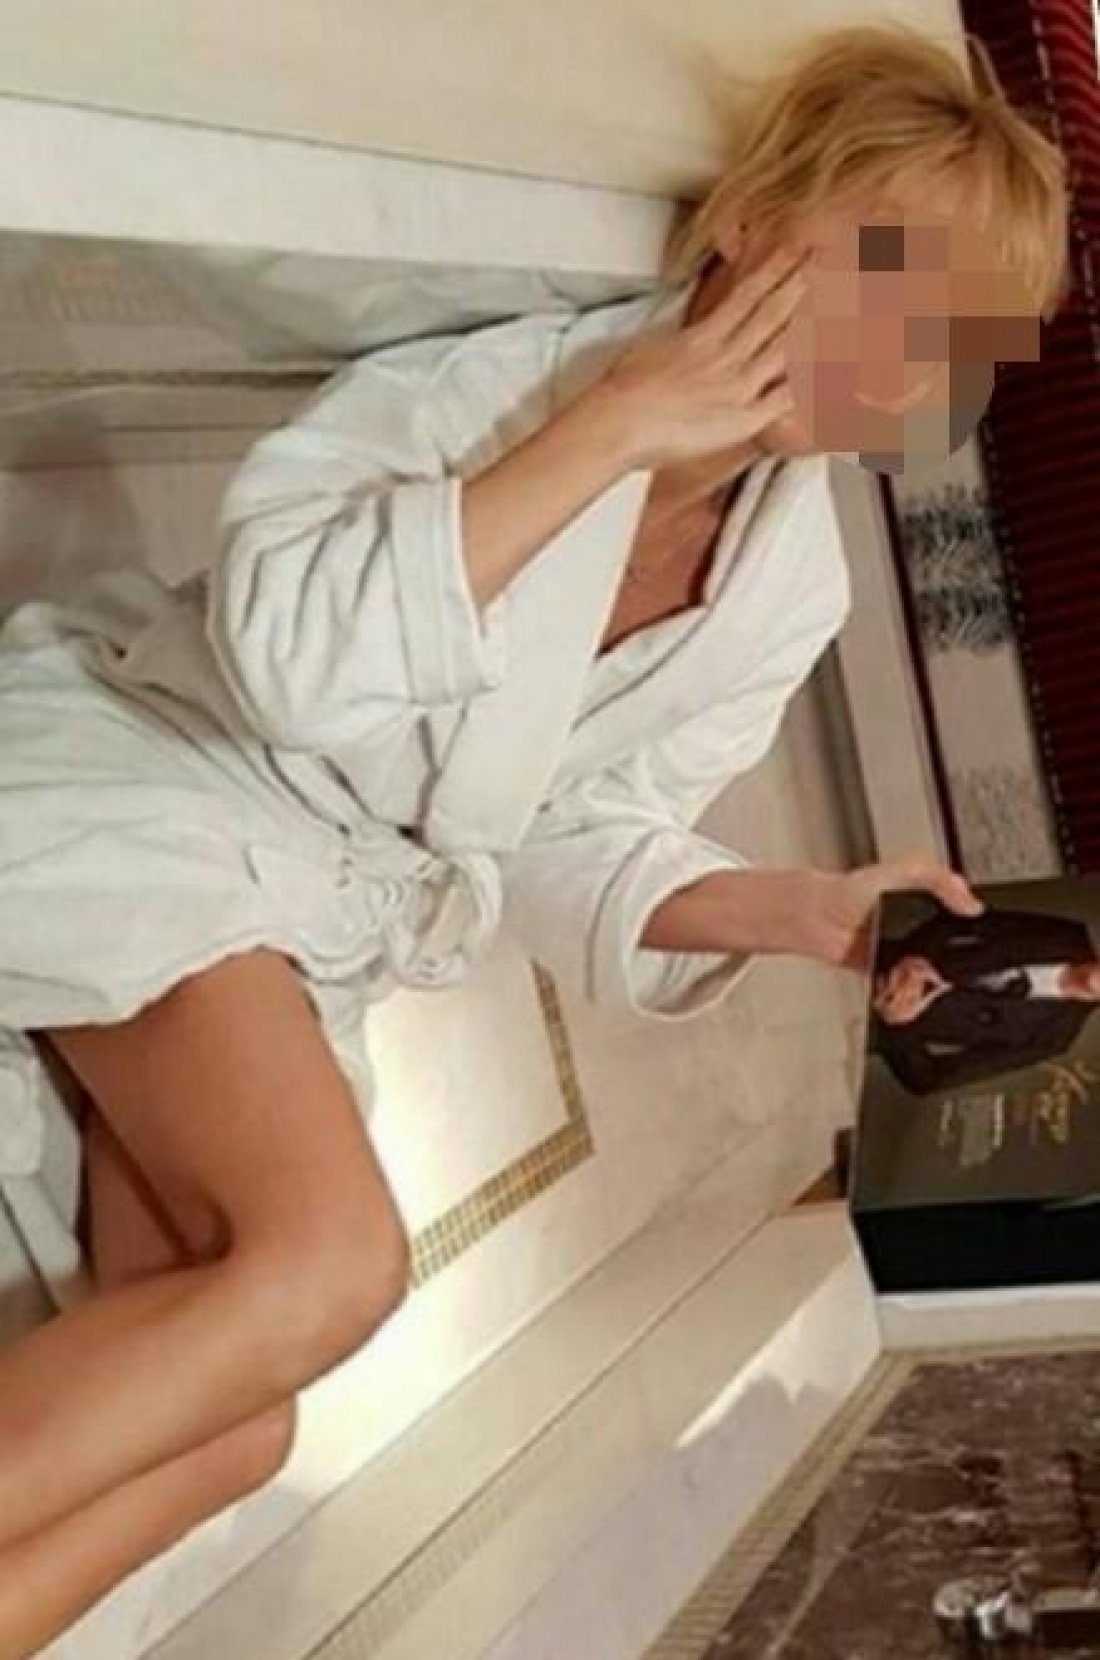 Альбина: проститутки индивидуалки в Казани